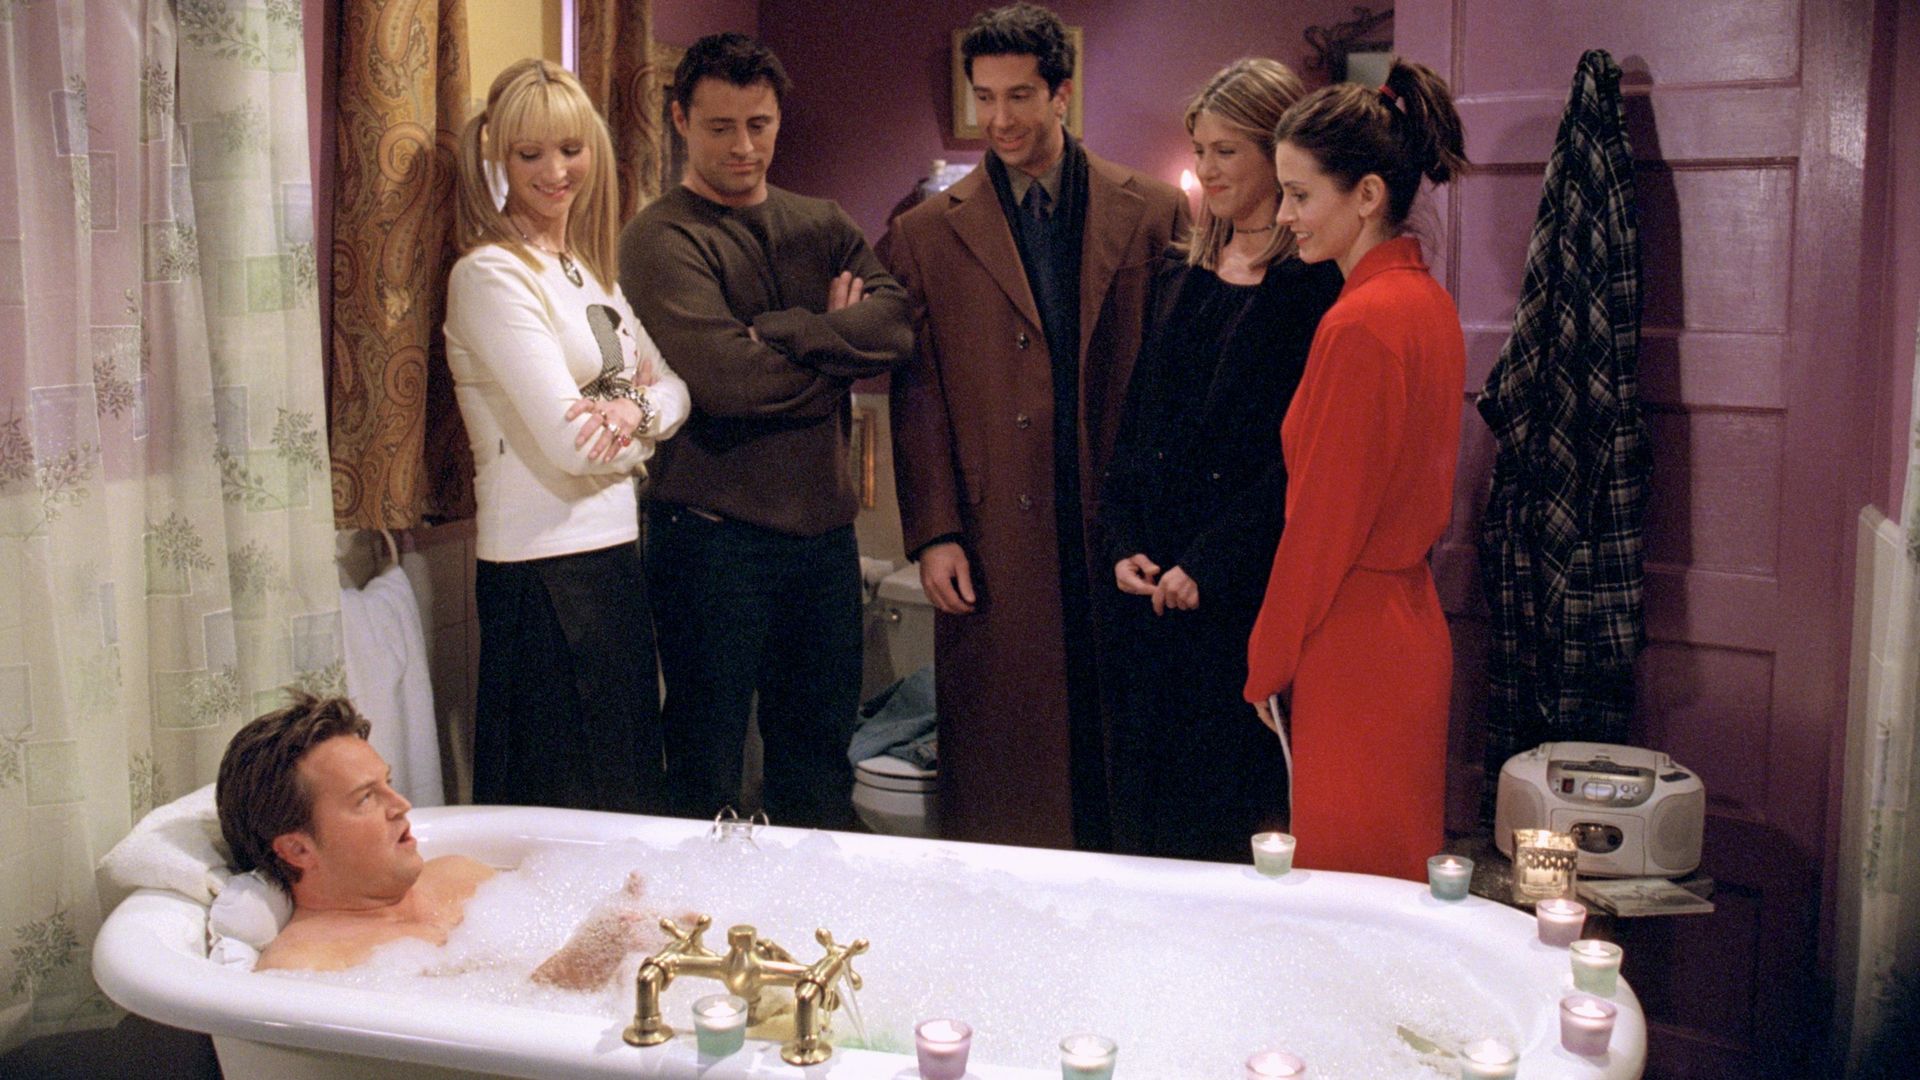 Le casting de la série 'Friends' durant l'épisode de leur retrouvailles (2020). 